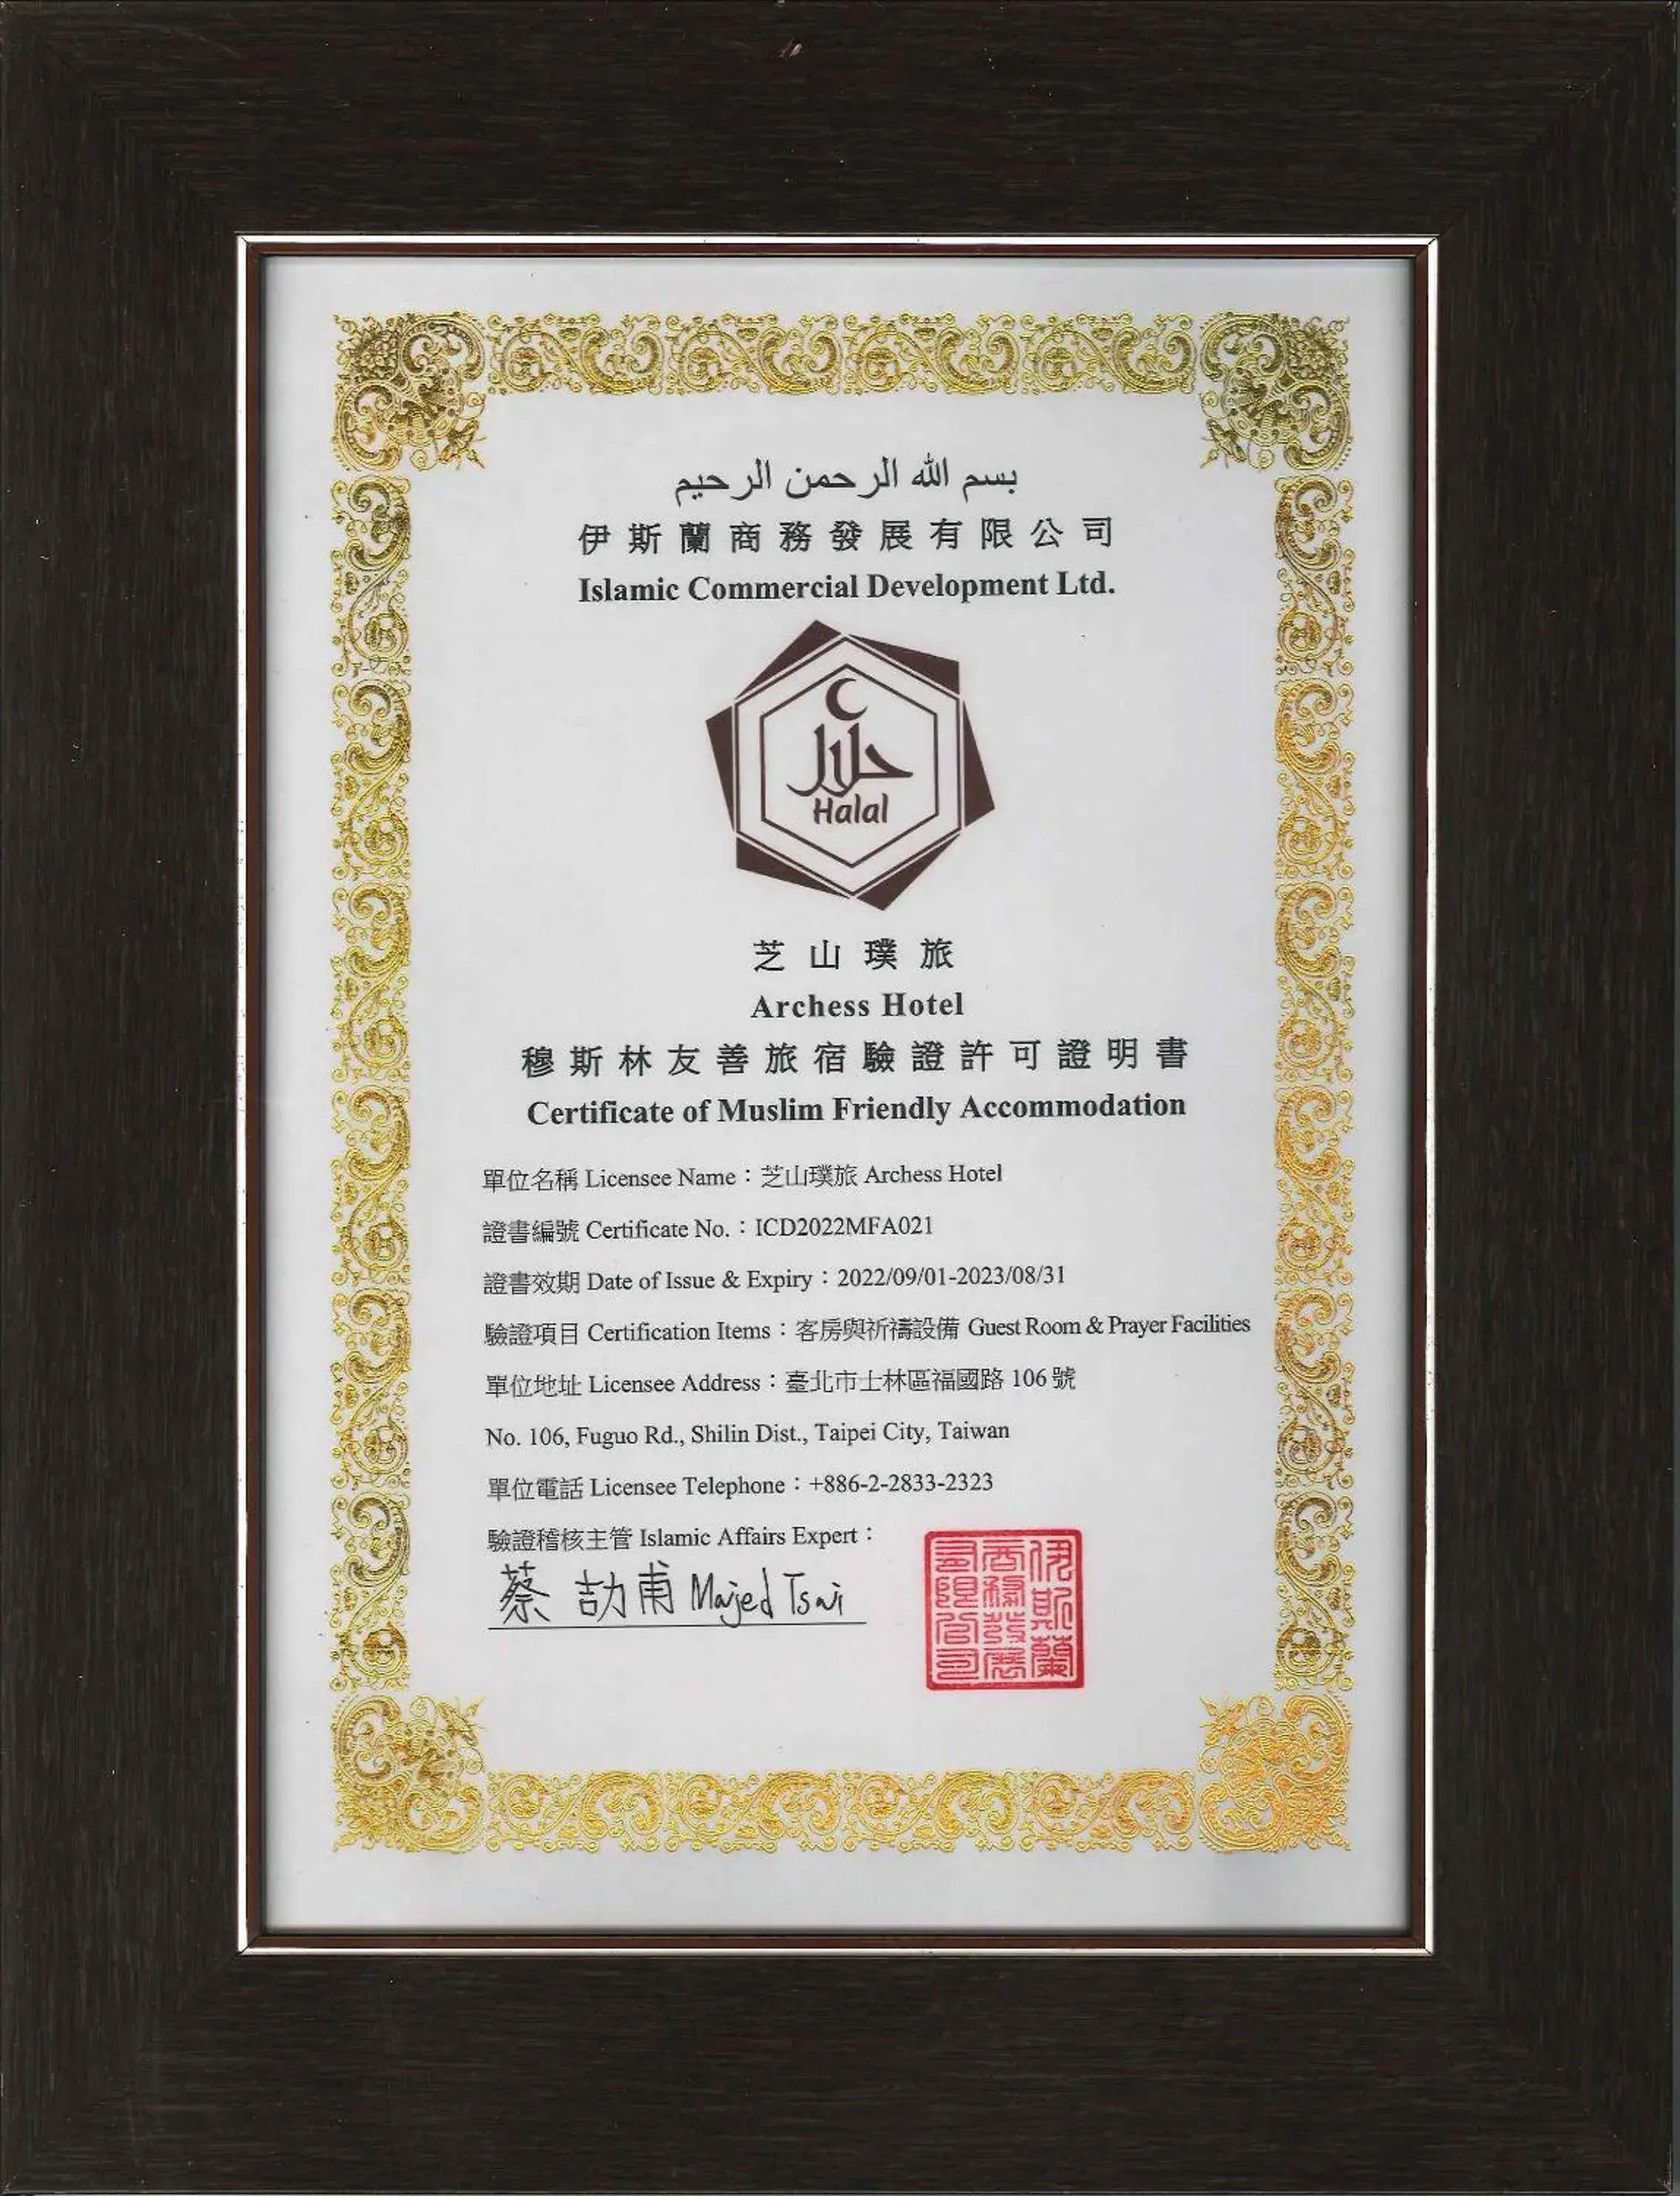 Certificate/Award in Archess Hotel